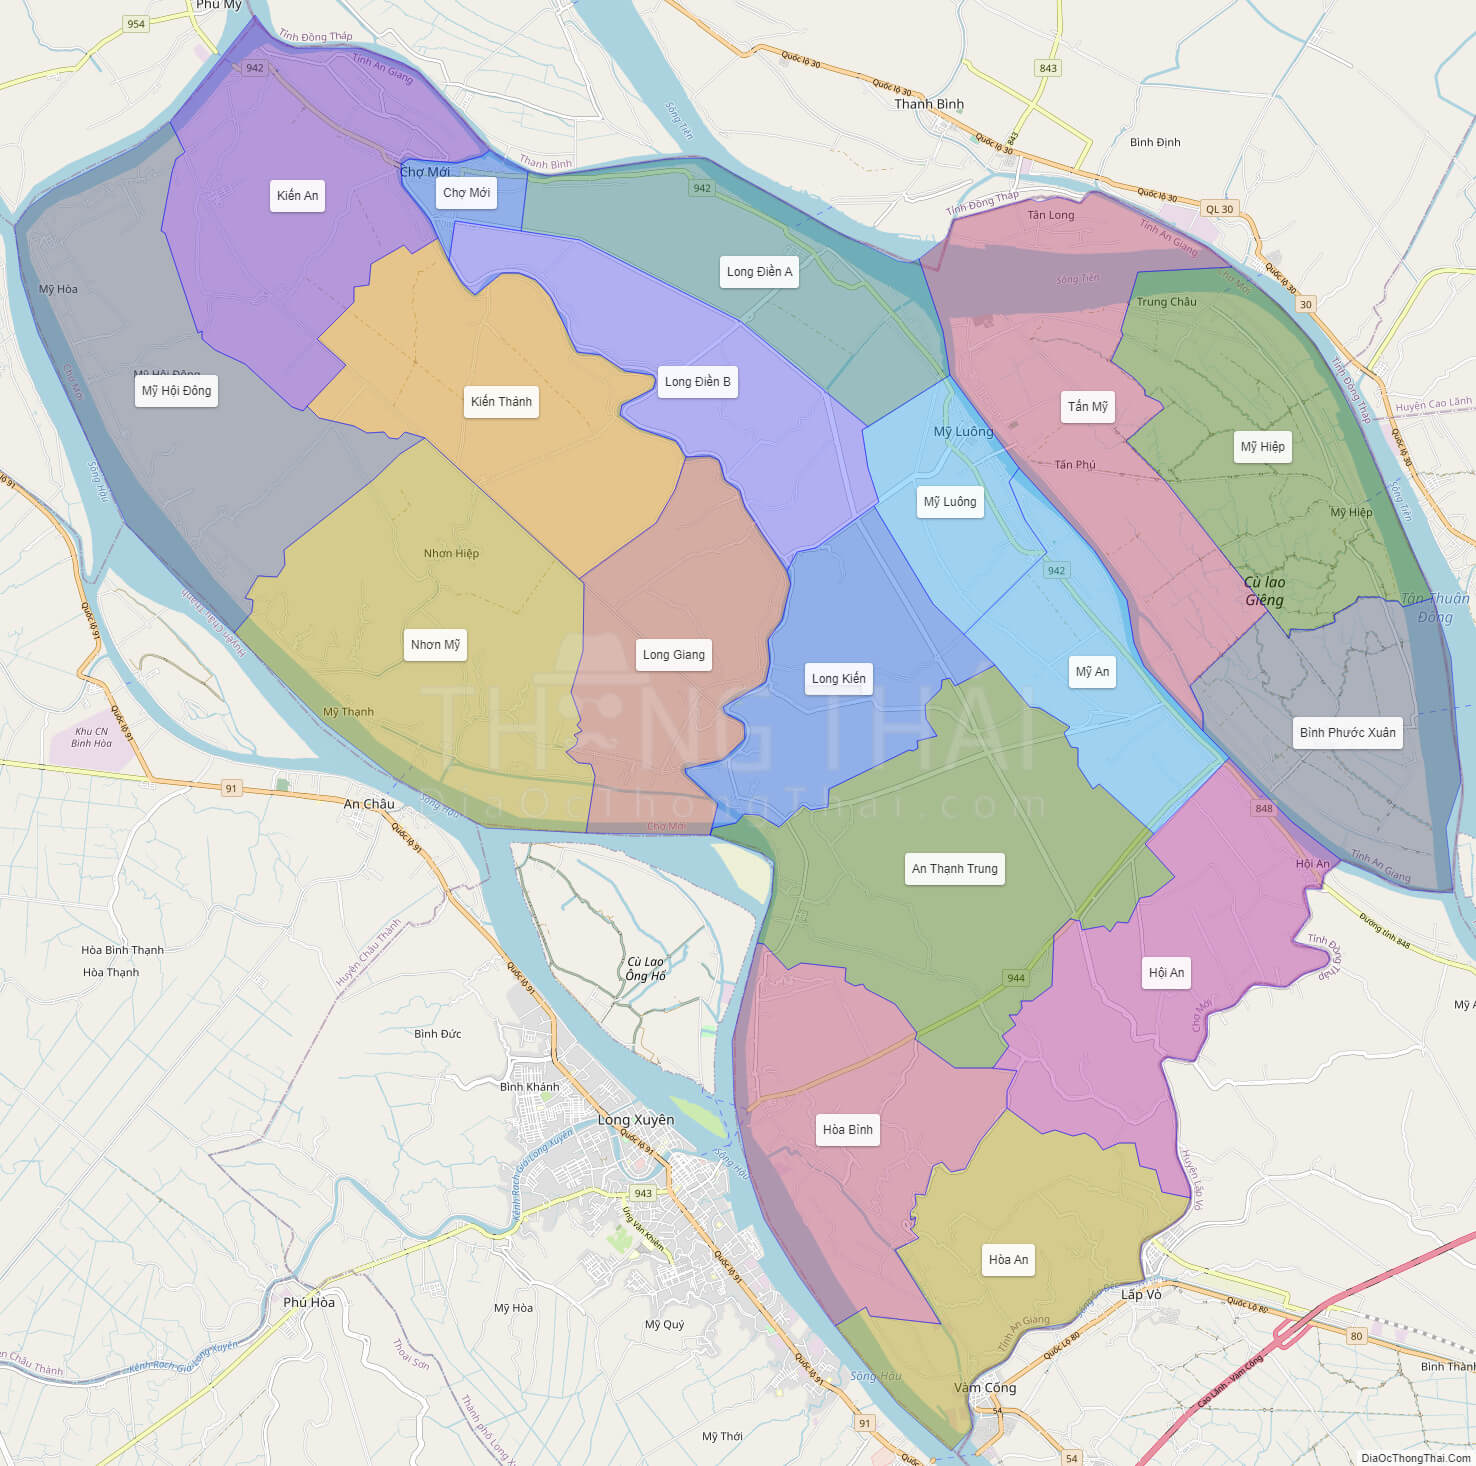 Chi tiết bản đồ hành chính huyện chợ mới tỉnh an giang đầy đủ nhất